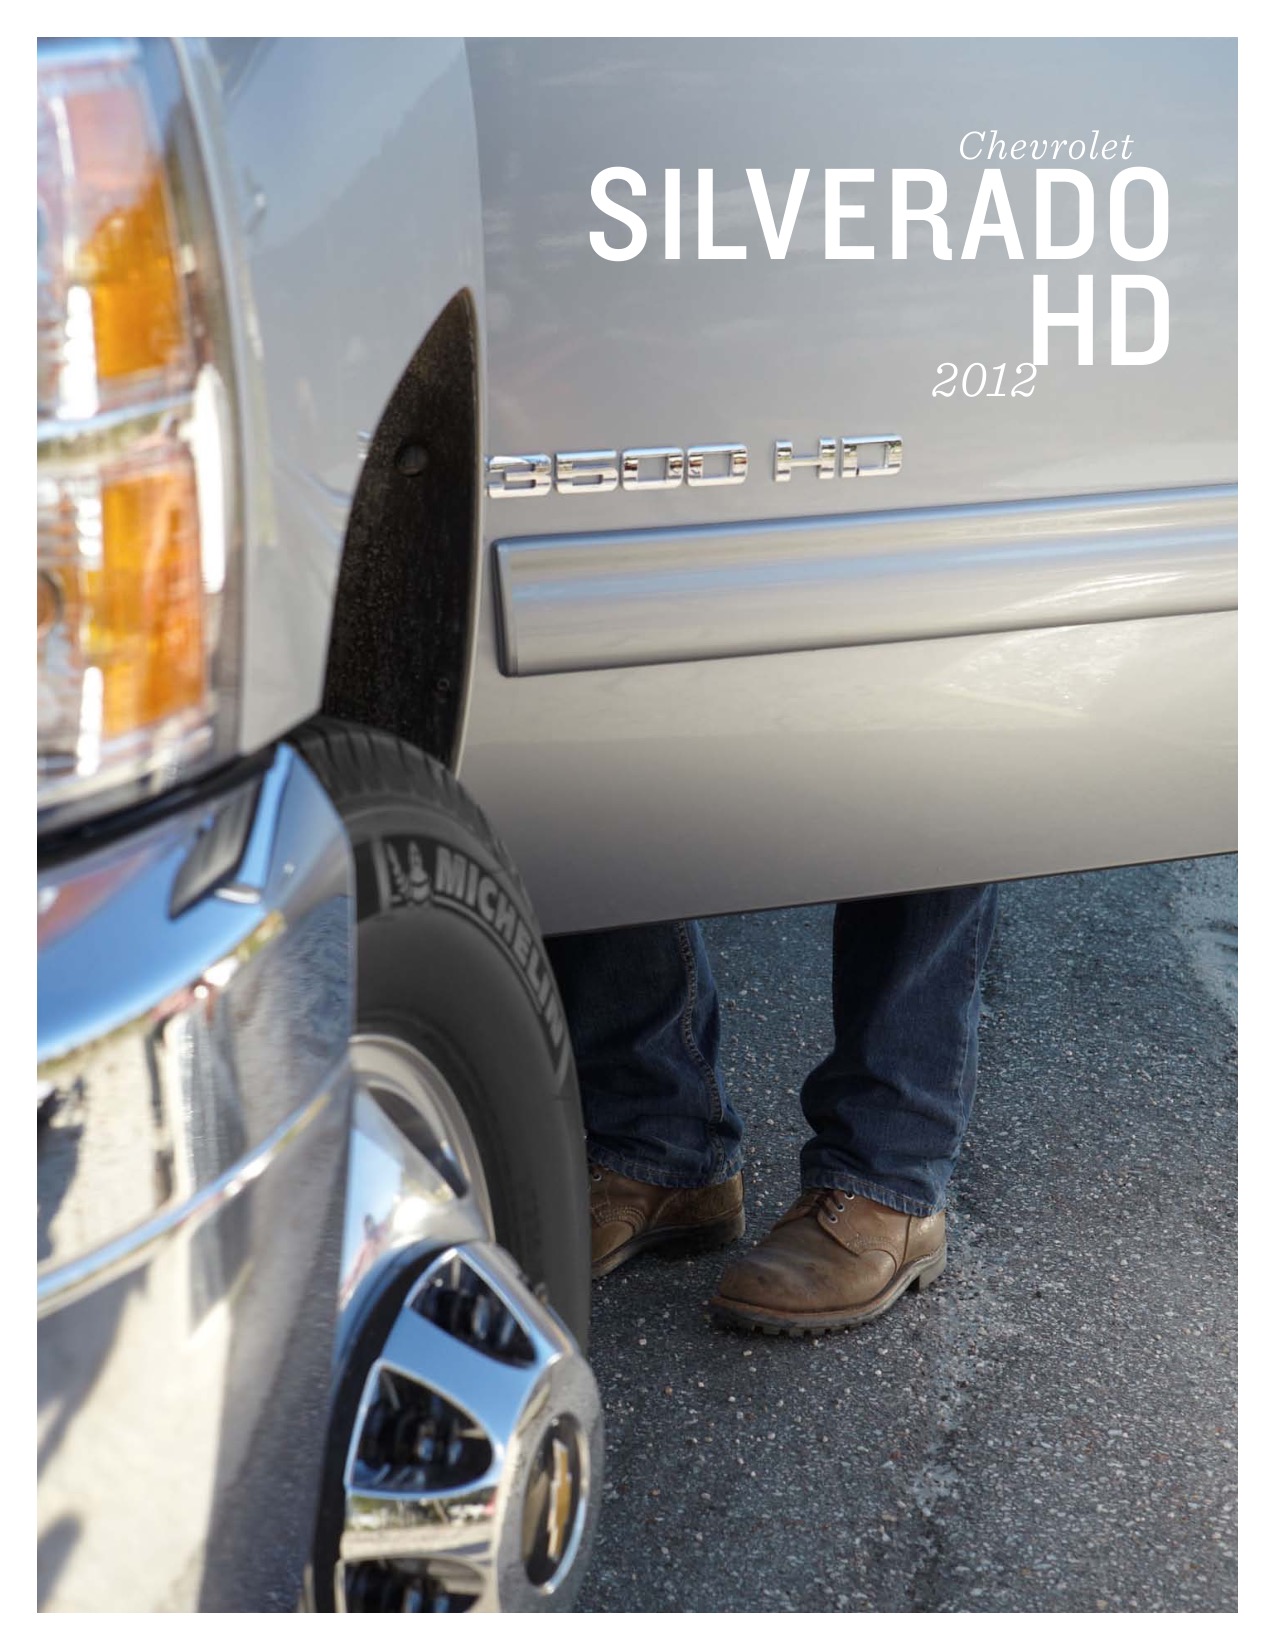 2012 Chevrolet Silverado Brochure